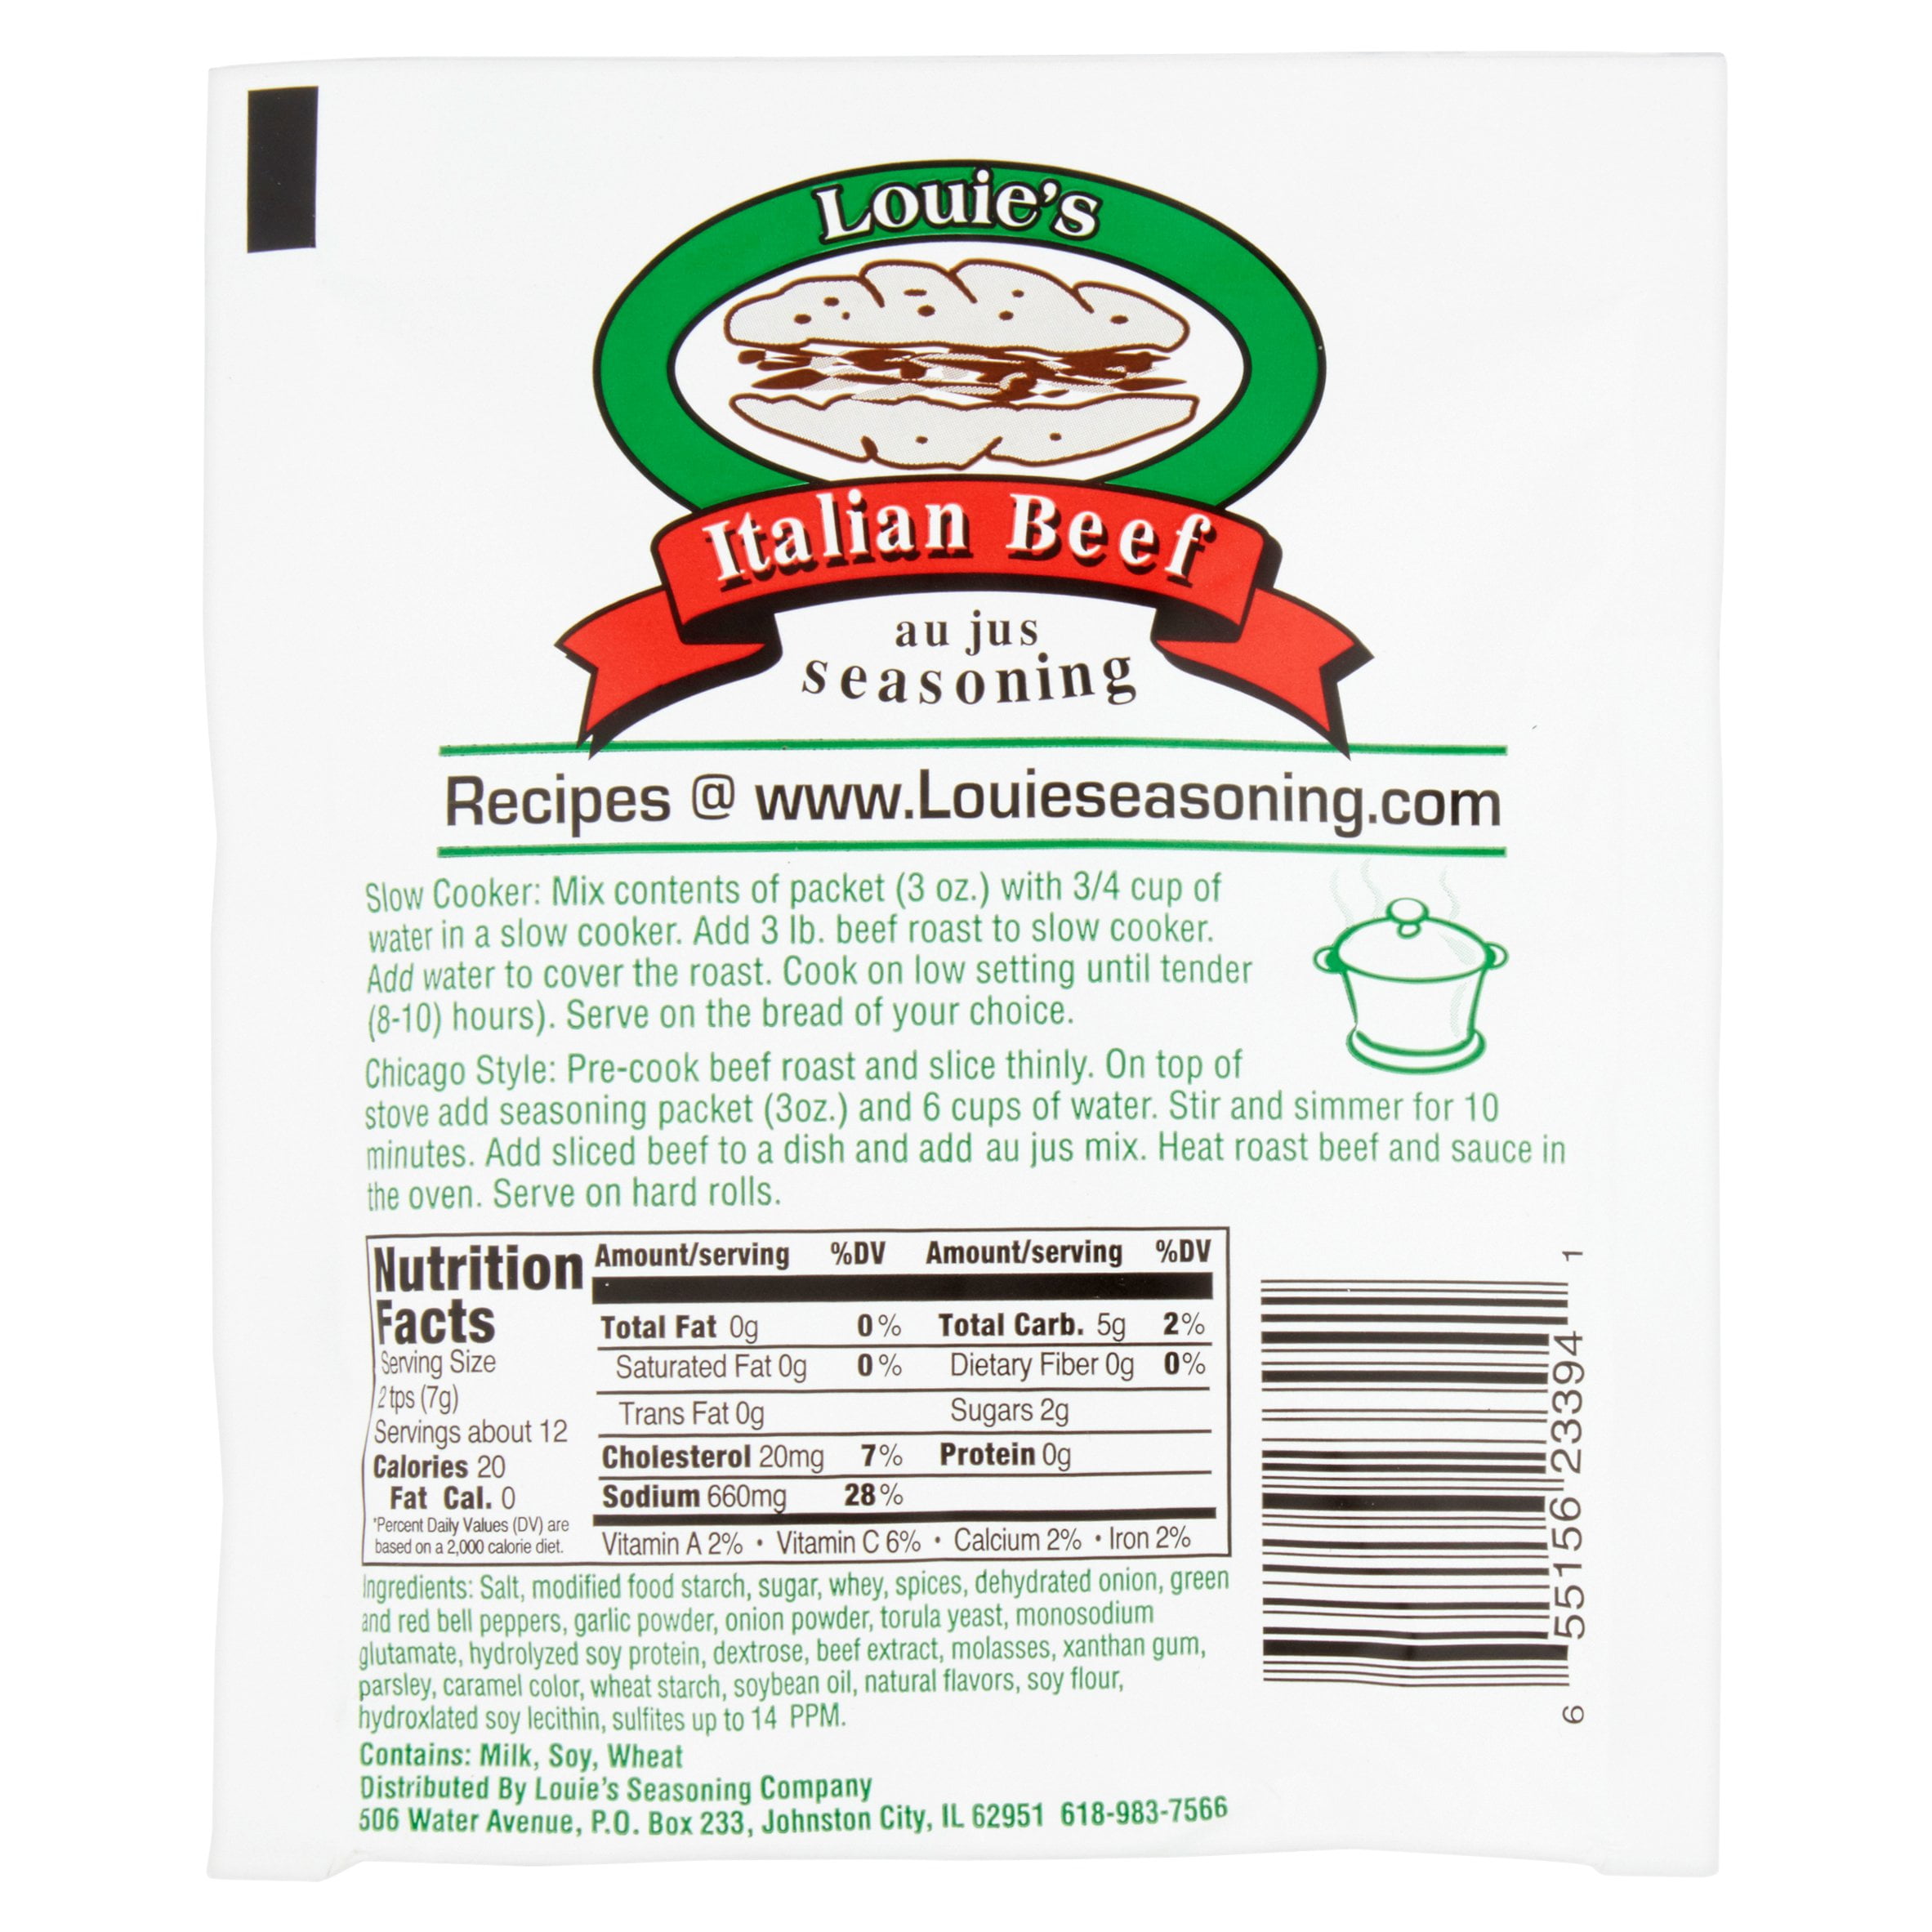 Louie's Hot Giardiniera - 3 pack (16oz Jars) - Louie's Seasoning